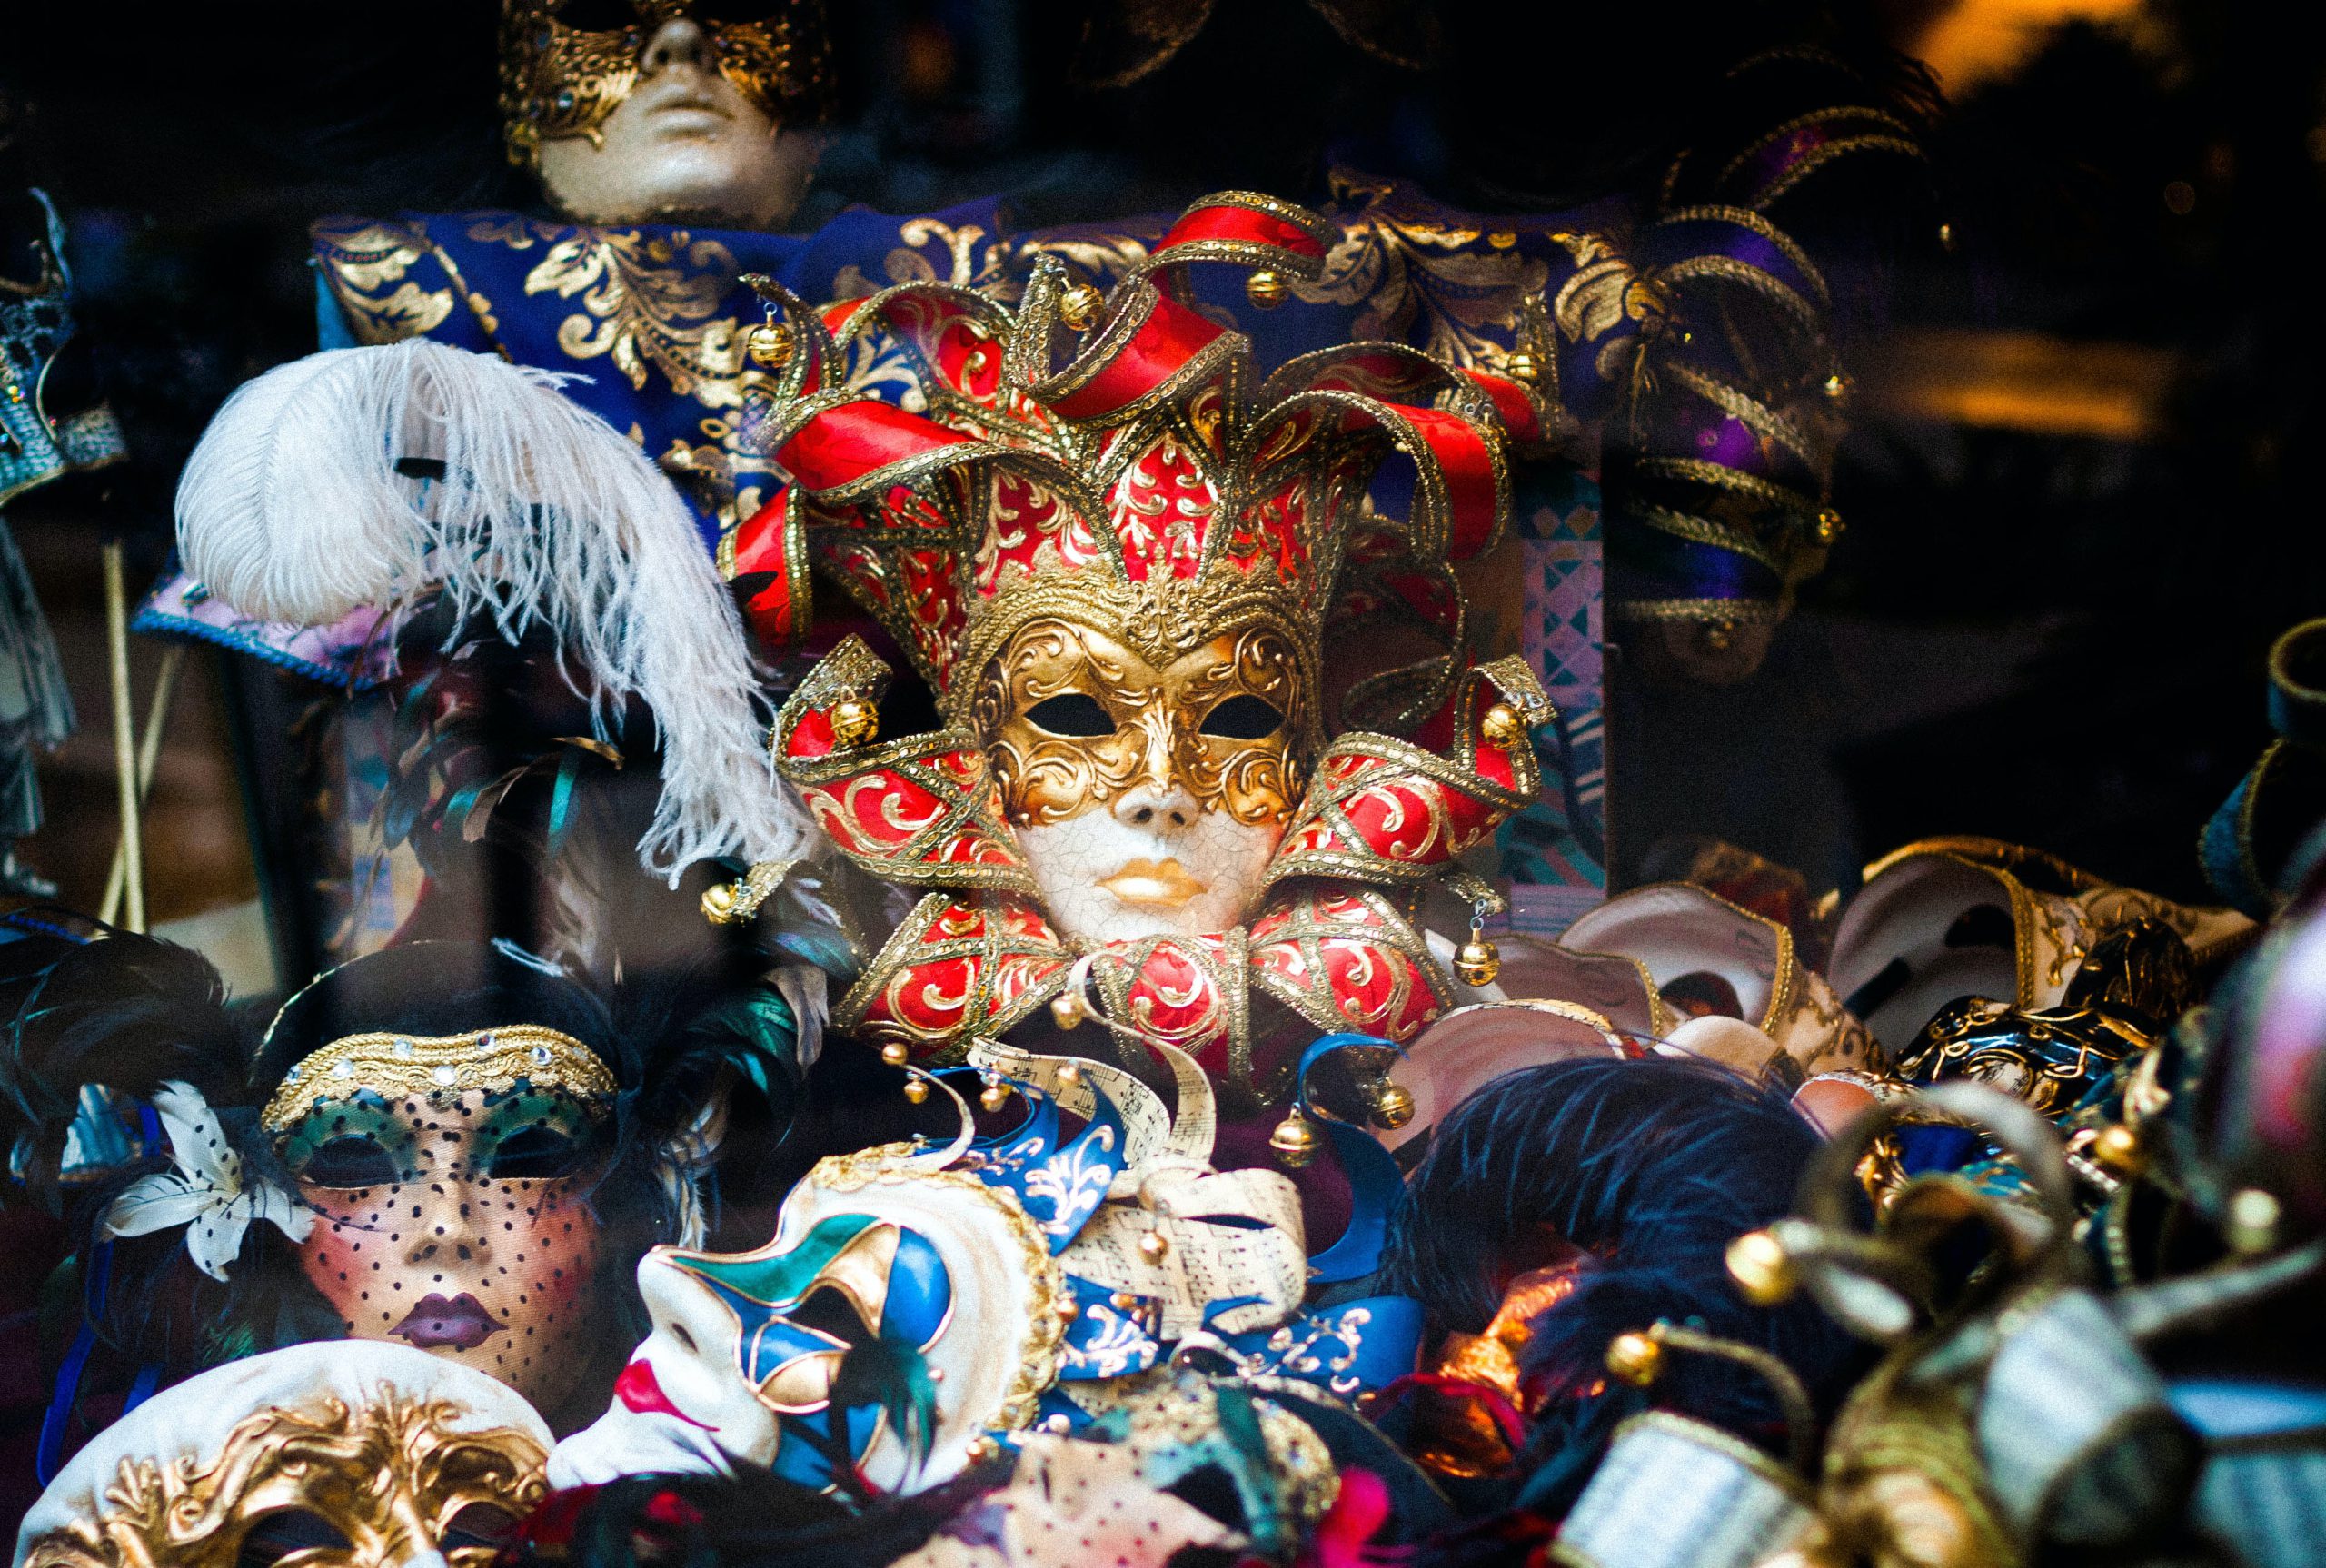 Fat Tuesday masks in a store window | Photo by Llanydd Lloyd on Unsplash